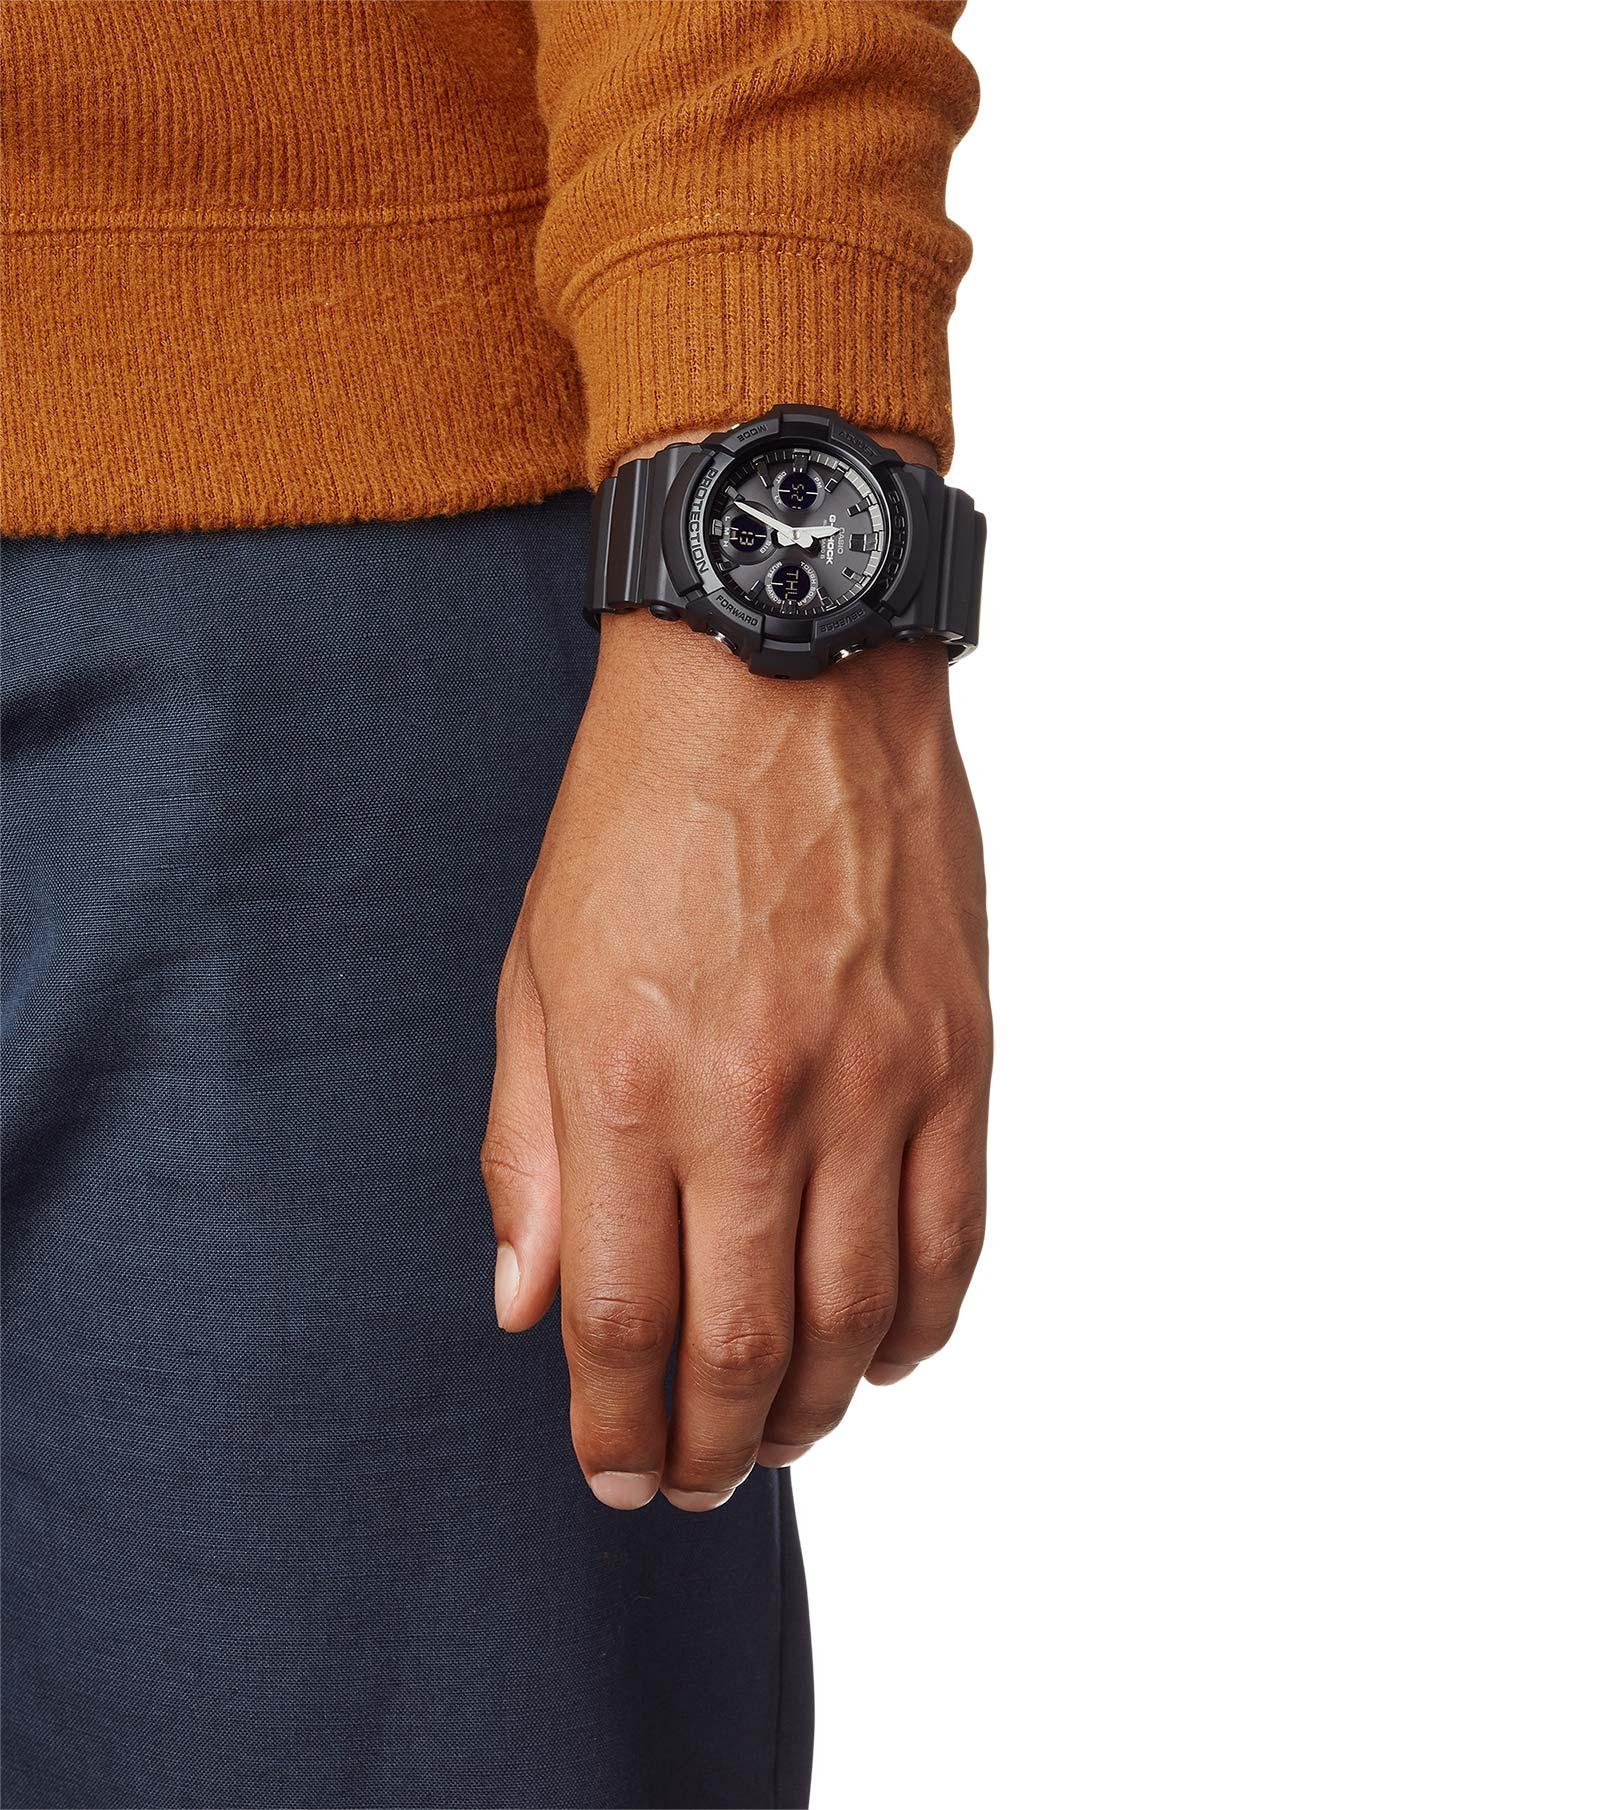 Casio G-Shock Watch • Mens uhrcenter GAW-100B-1AER AnaDigi RC Solar